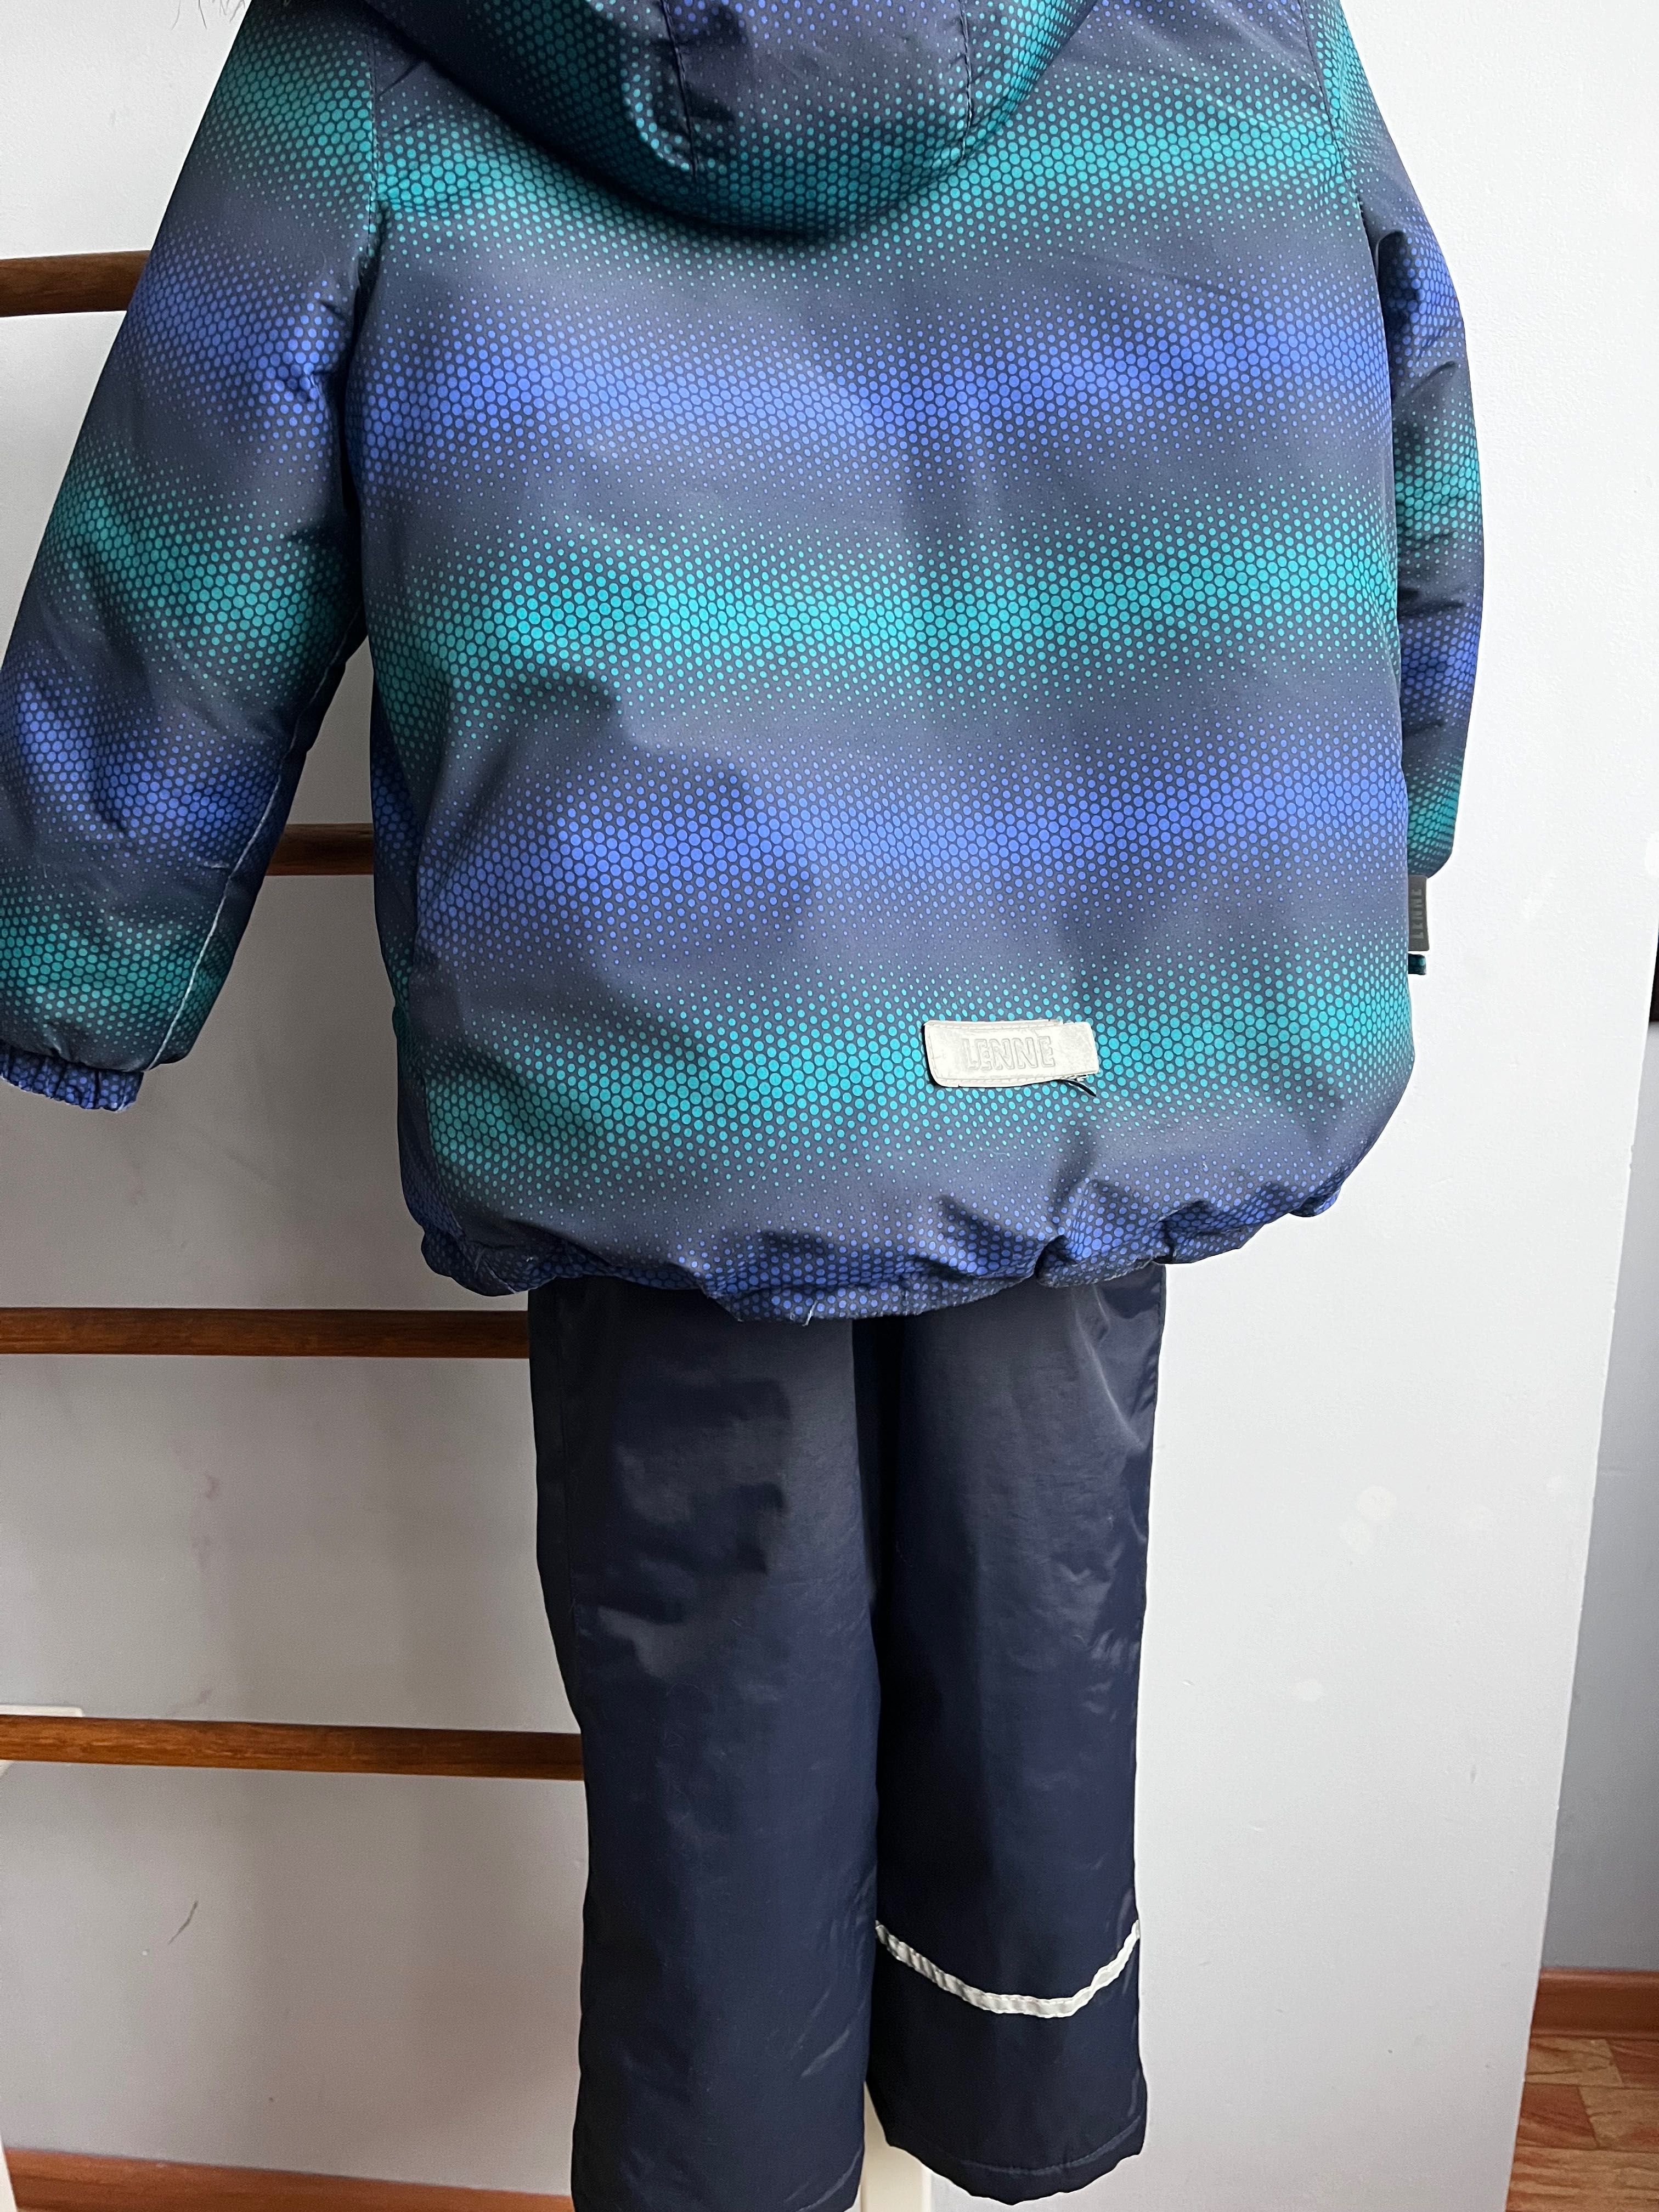 Зимний комплект для мальчика (куртка+полукомбинезон) Lenne Ron 116 р.